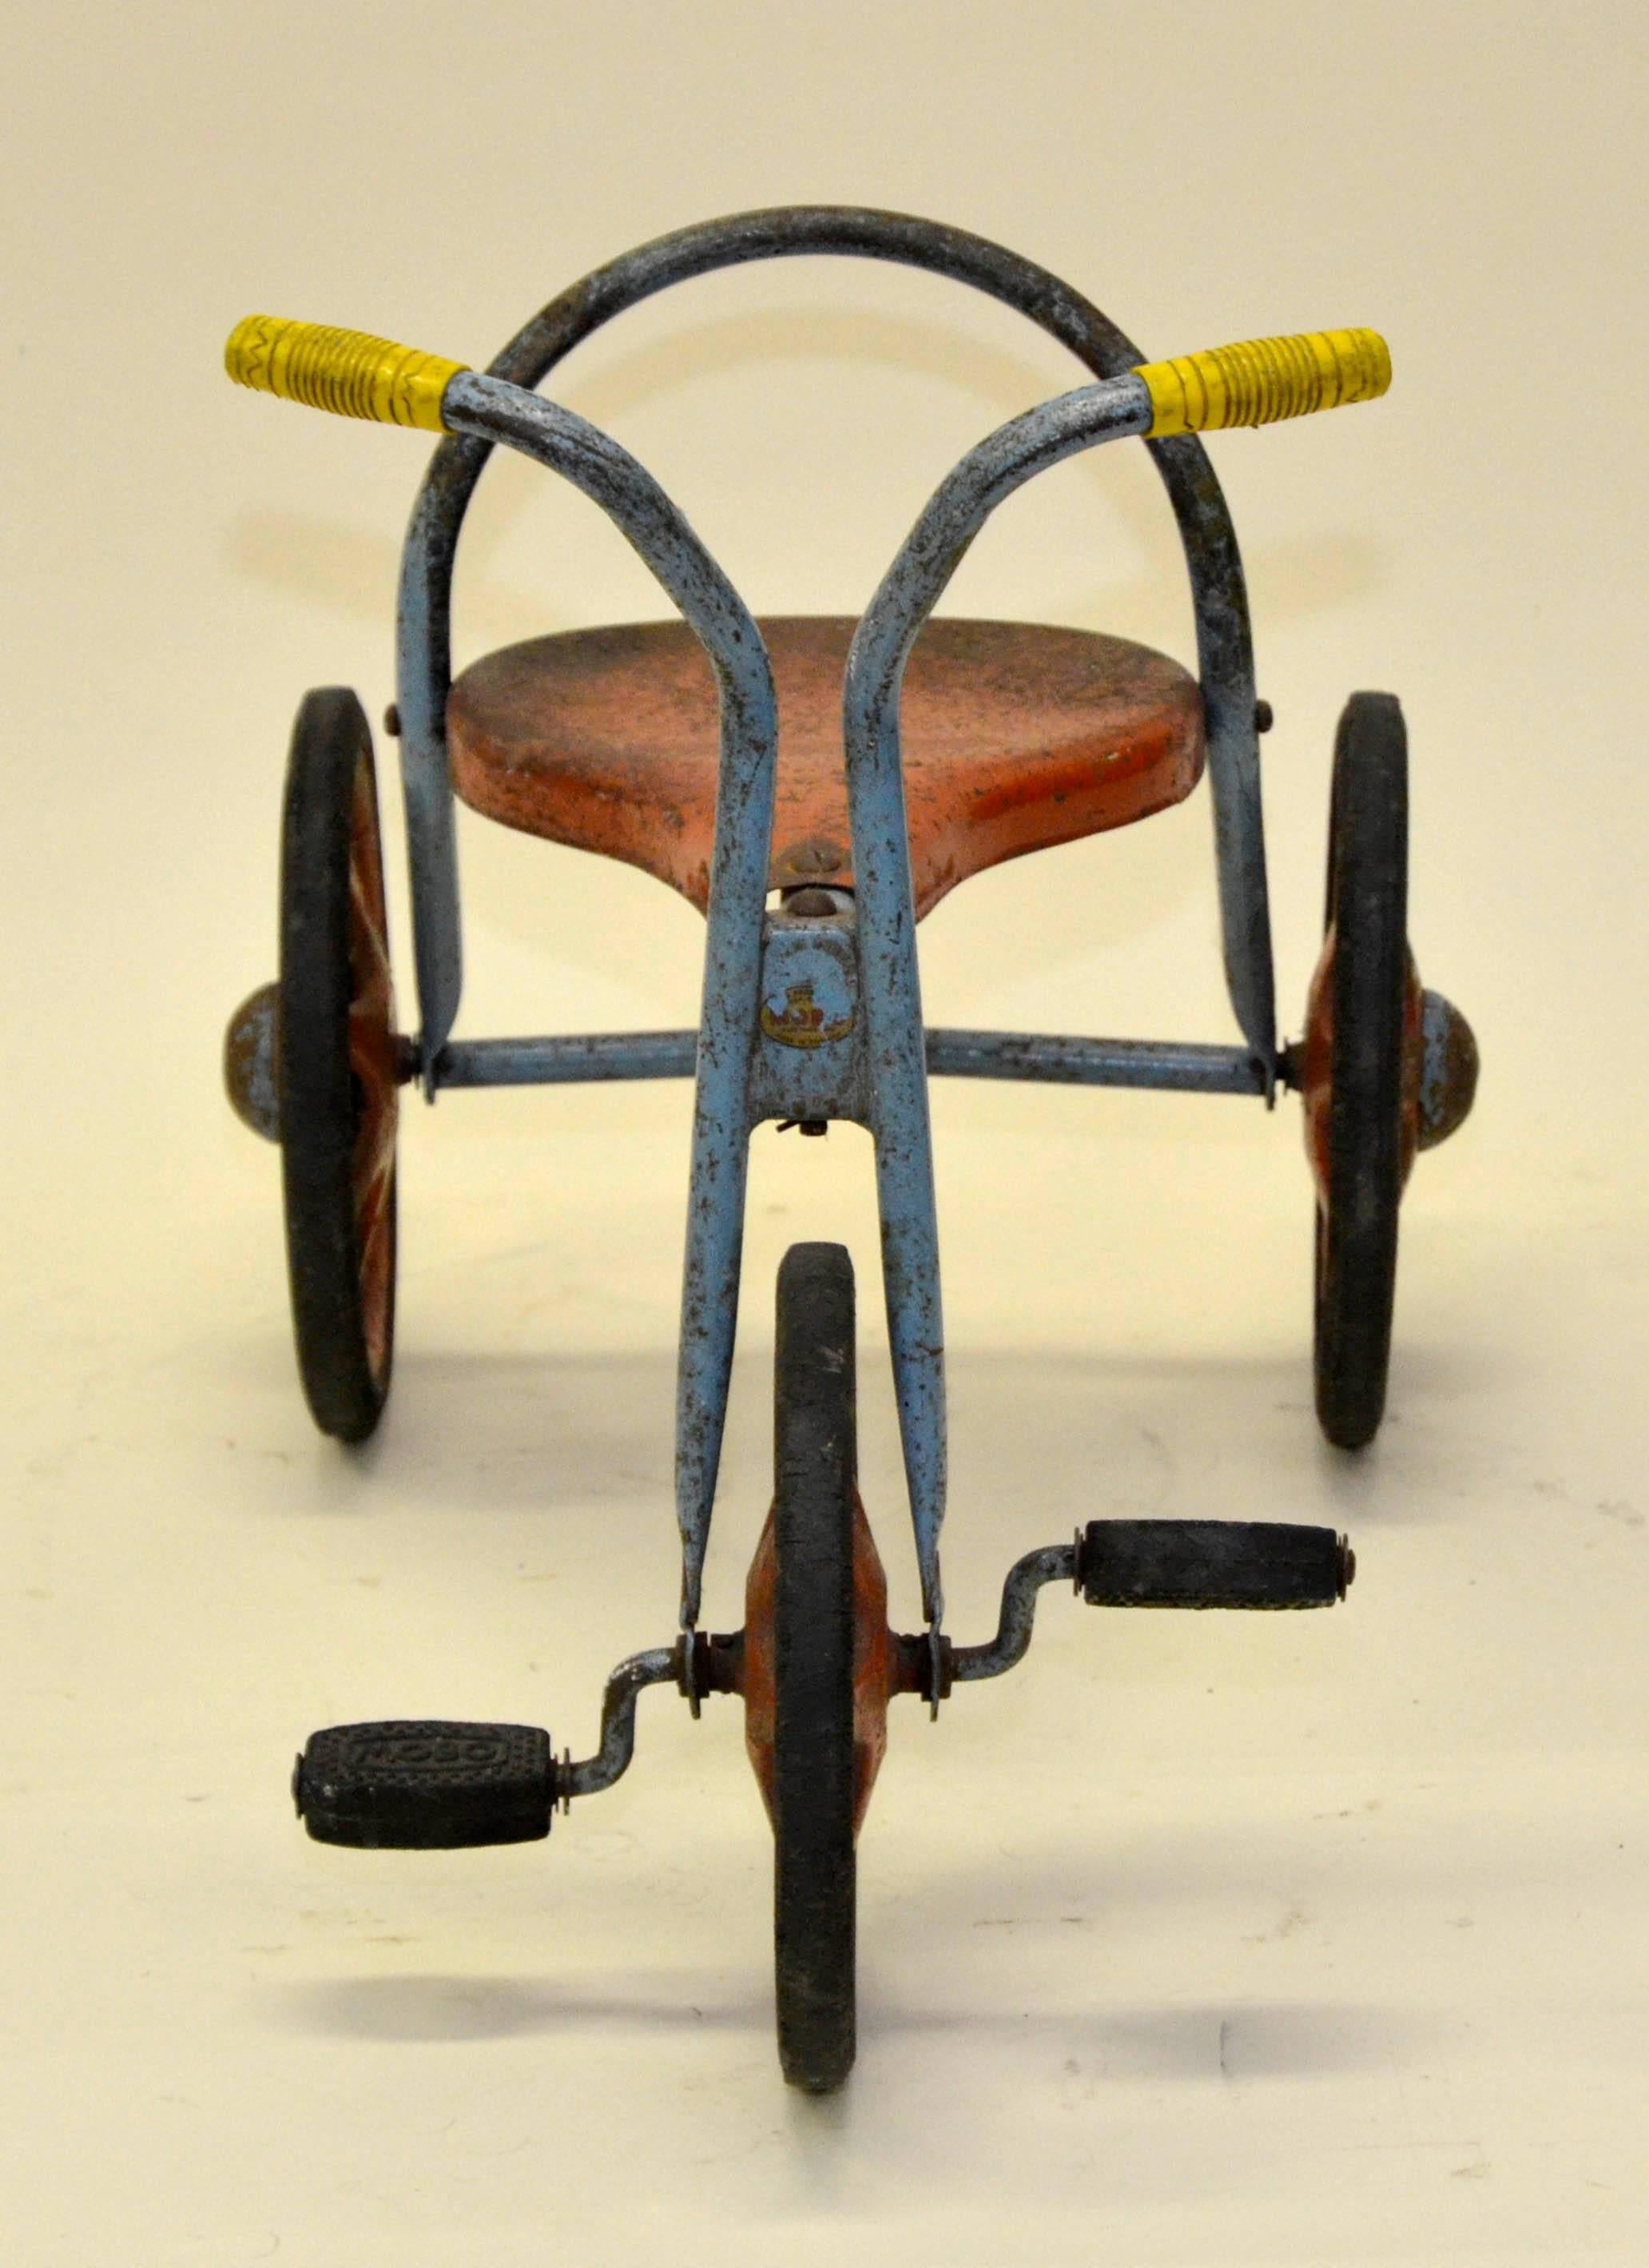 Dieses dreirädrige Kleinkind-Dreirad in den Farben Rot, Hellblau und Gelb wurde in den frühen 1960er Jahren vom englischen Spielzeughersteller Mobo produziert.

Anmerkung des Sammlers:

Mobo Toy's wurden von 1947-1972 von D. Sebel & CO. in